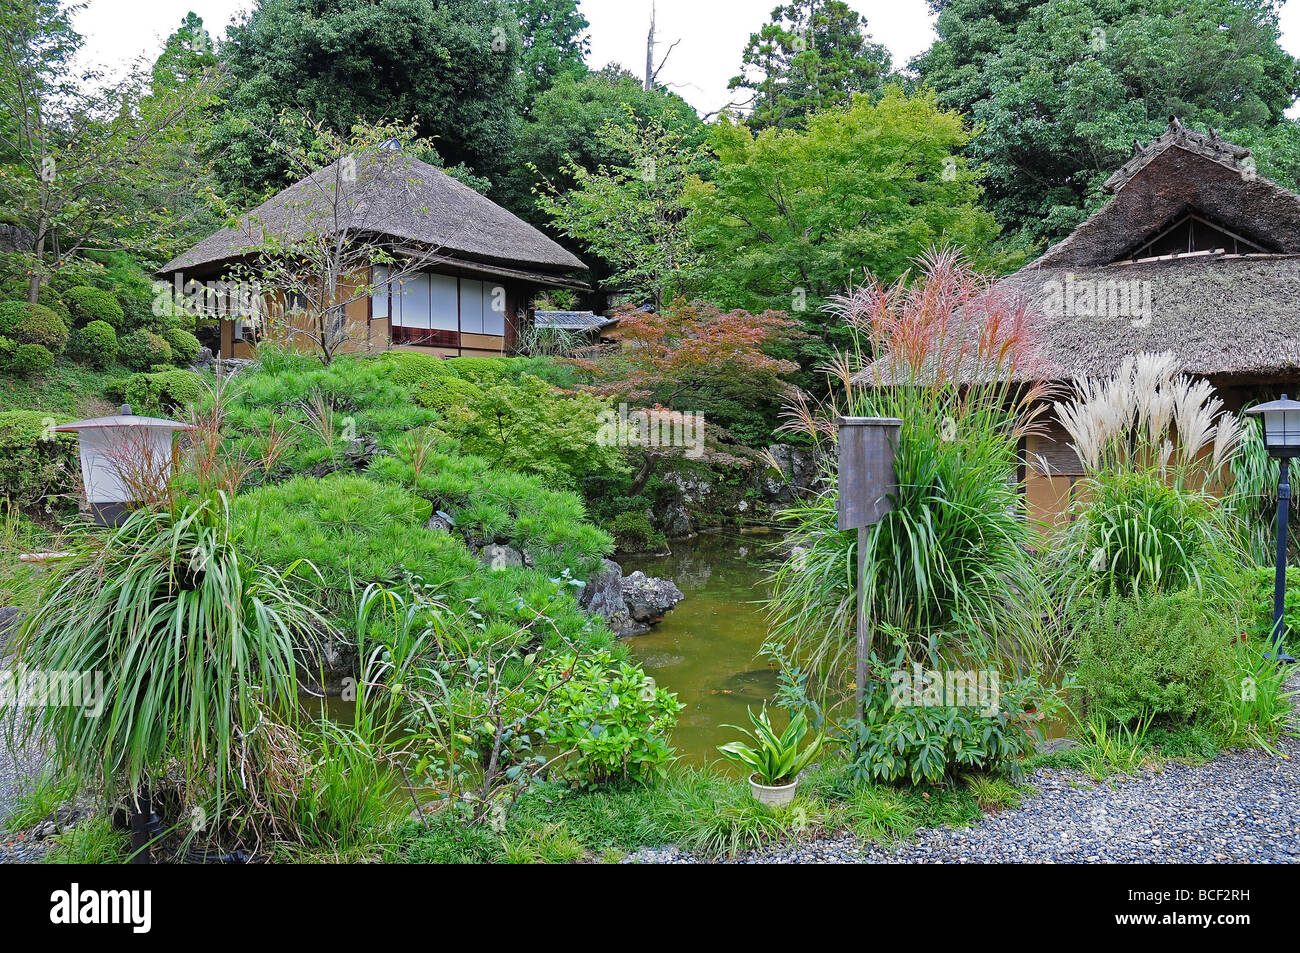 Tea House in green garden Stock Photo